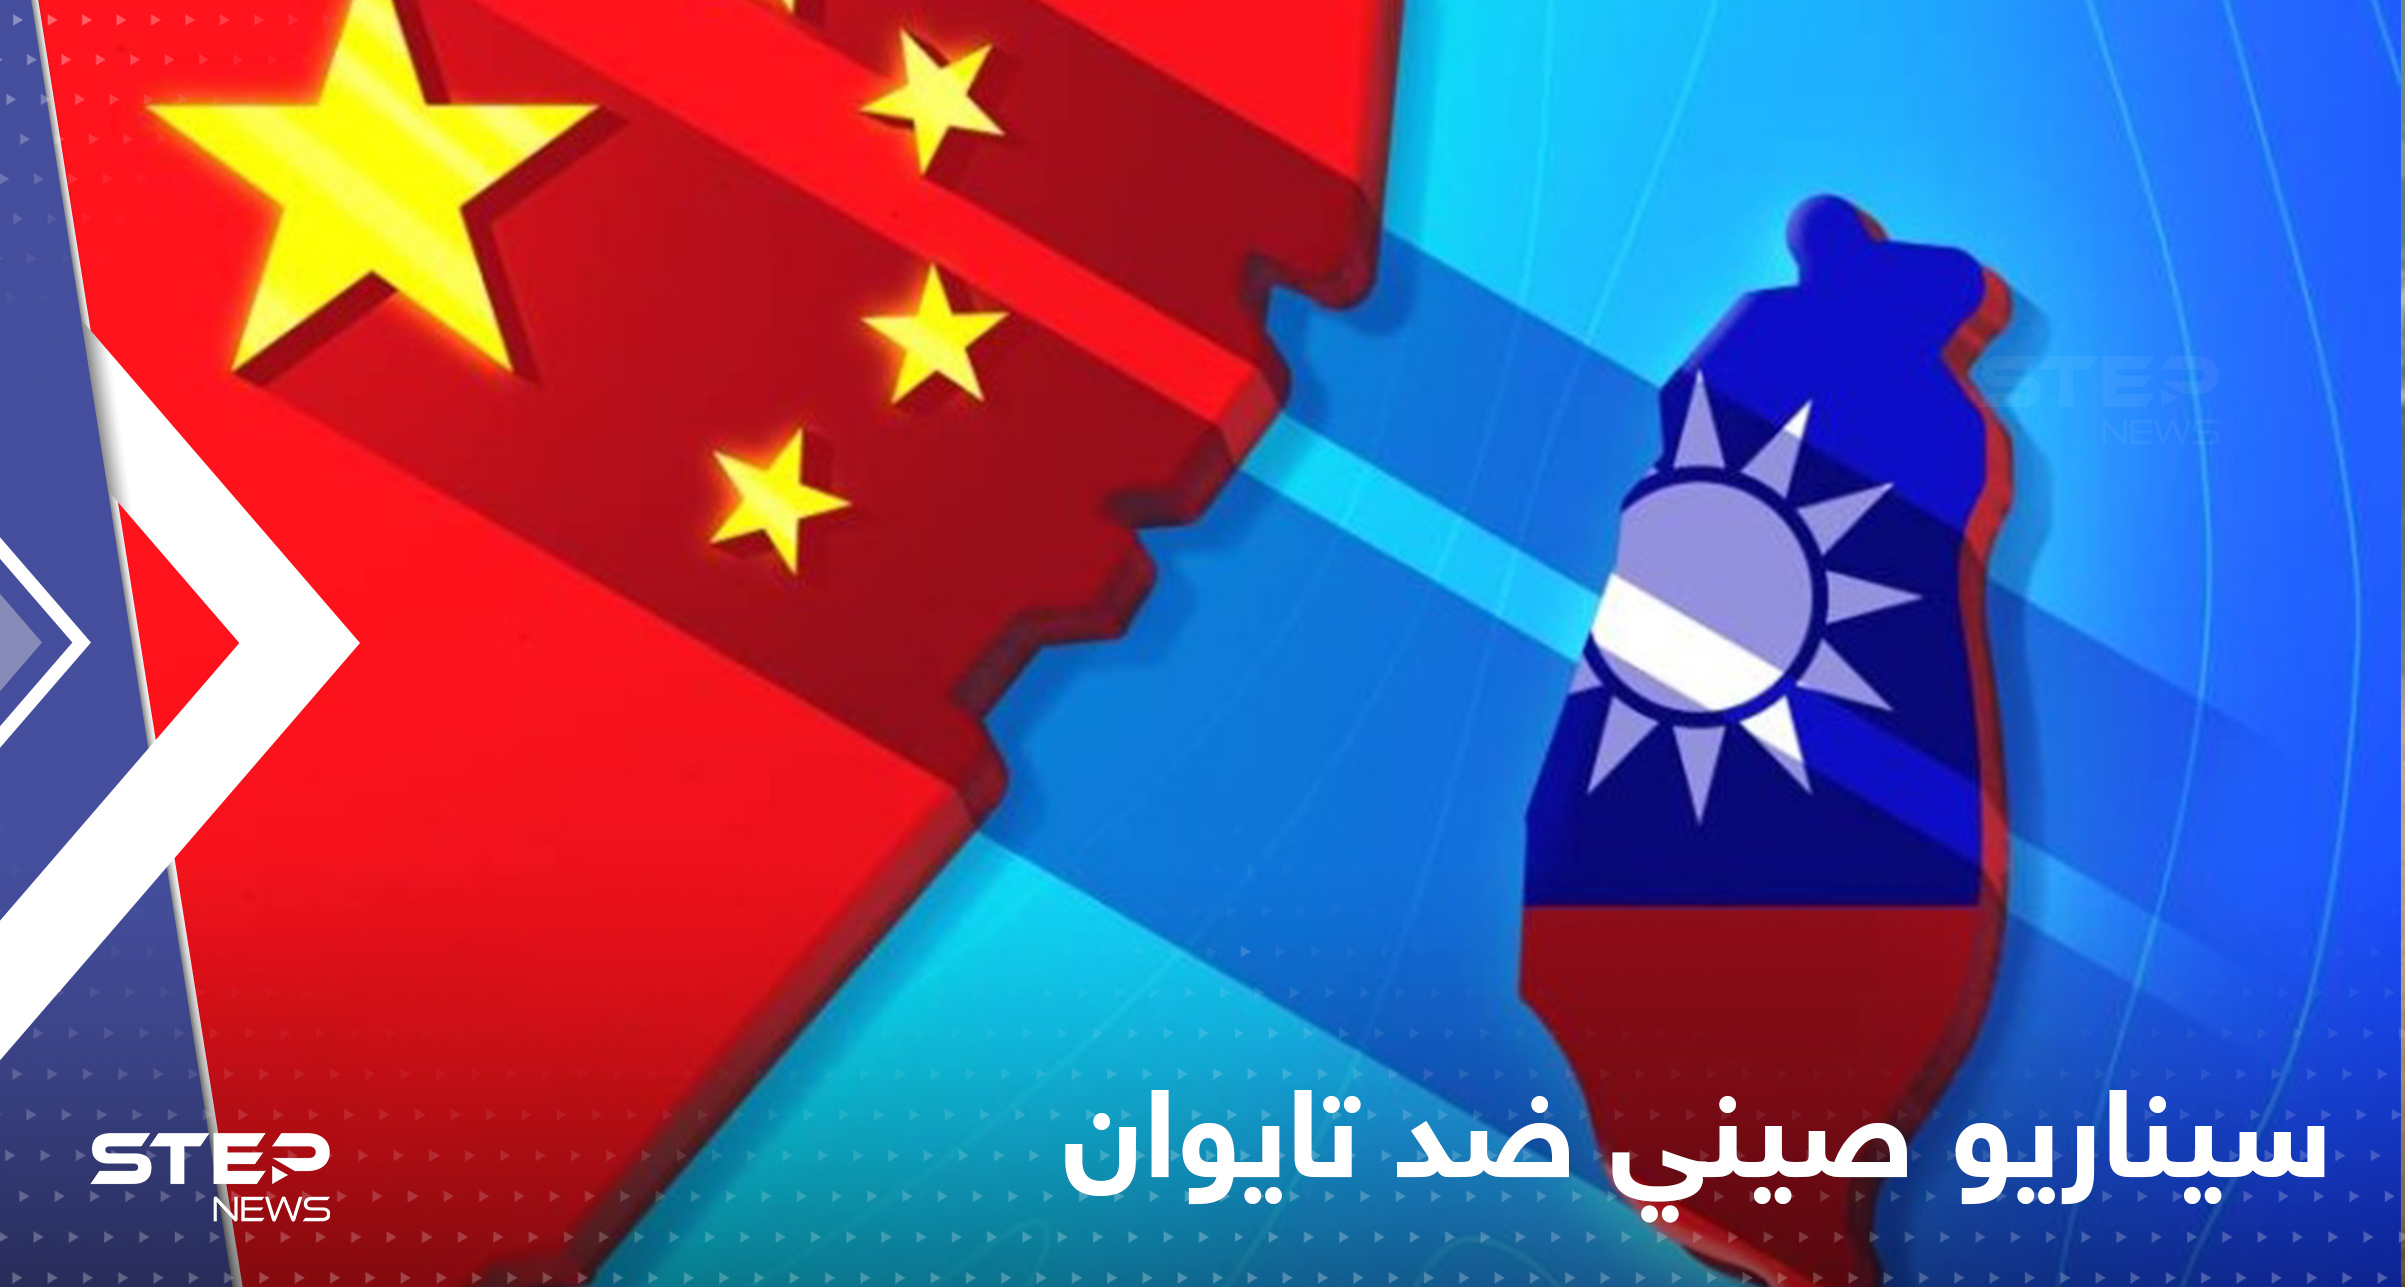 الصين قد تغزو تايوان بدون إطلاق أي رصاصة.. كشف سيناريو جديد لبكين ضد تايبيه